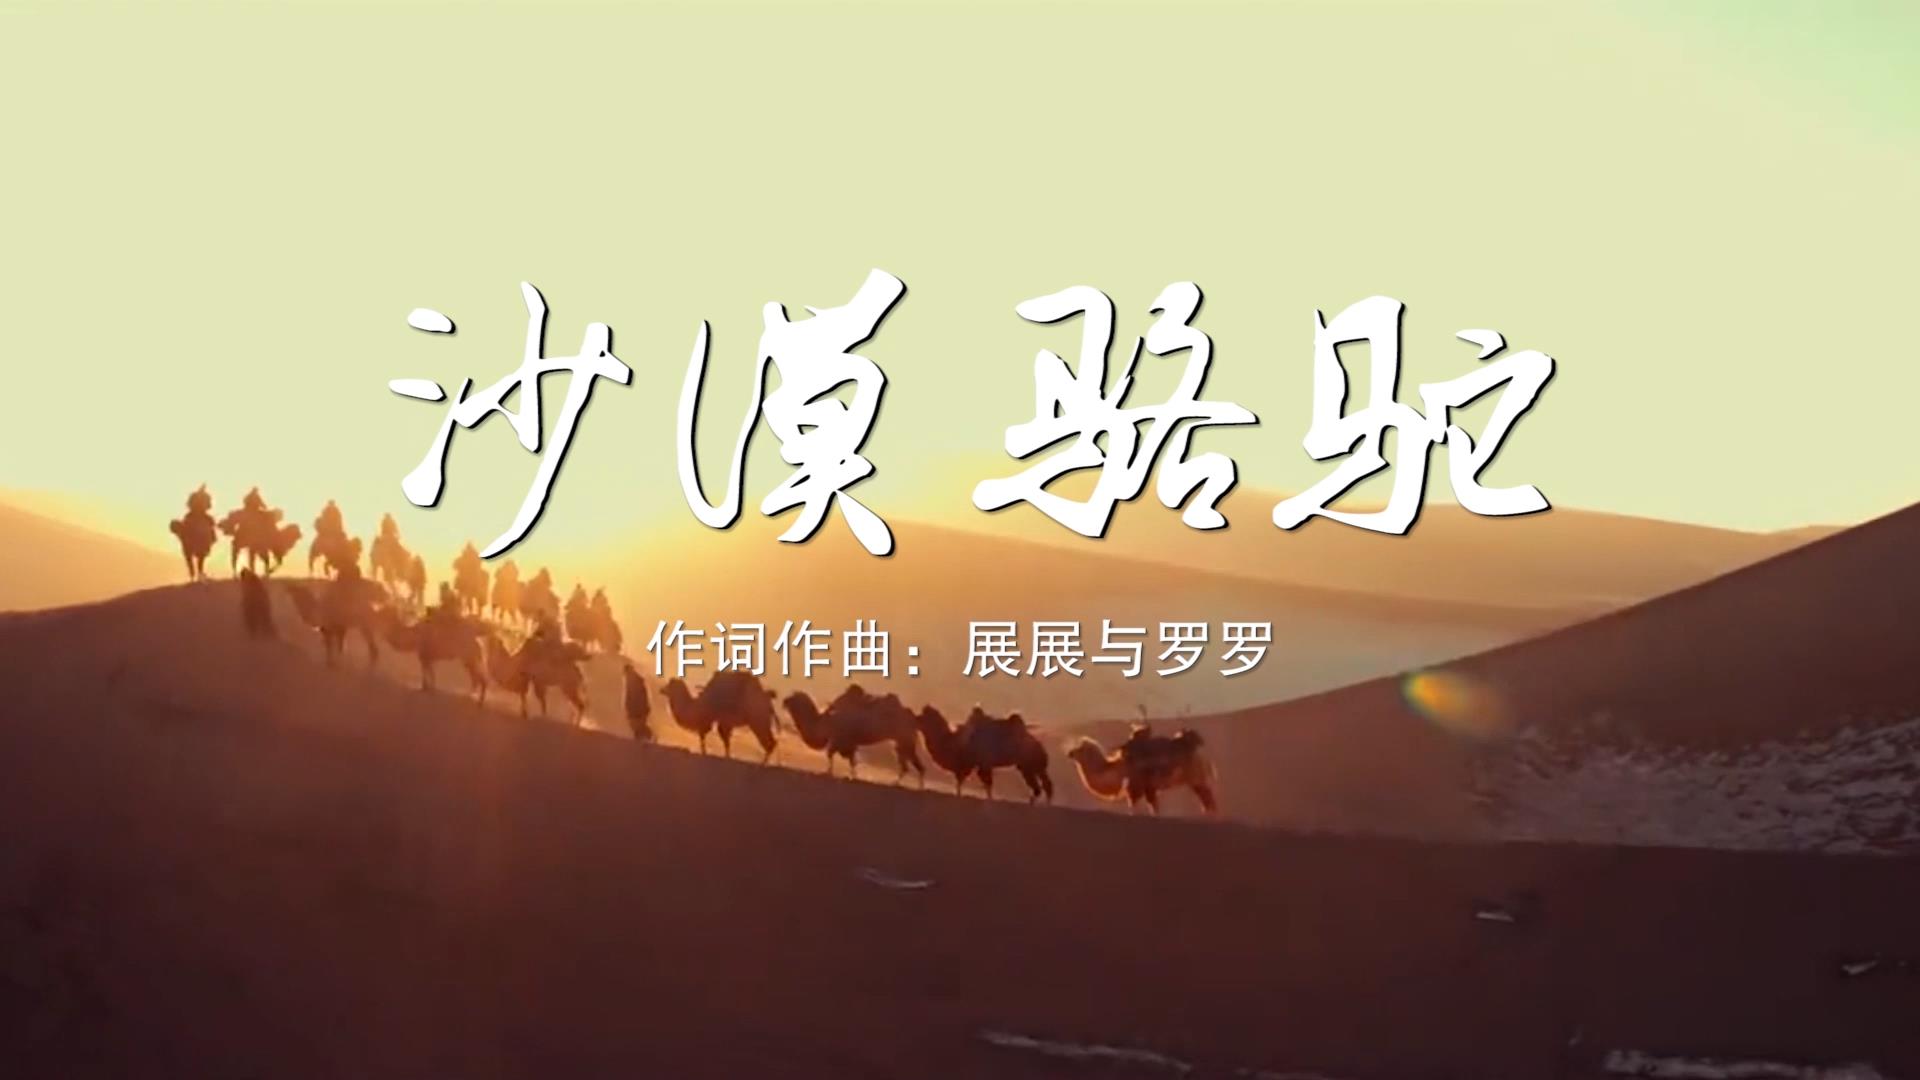 沙漠骆驼 MV字幕配乐伴奏舞台演出LED背景大屏幕